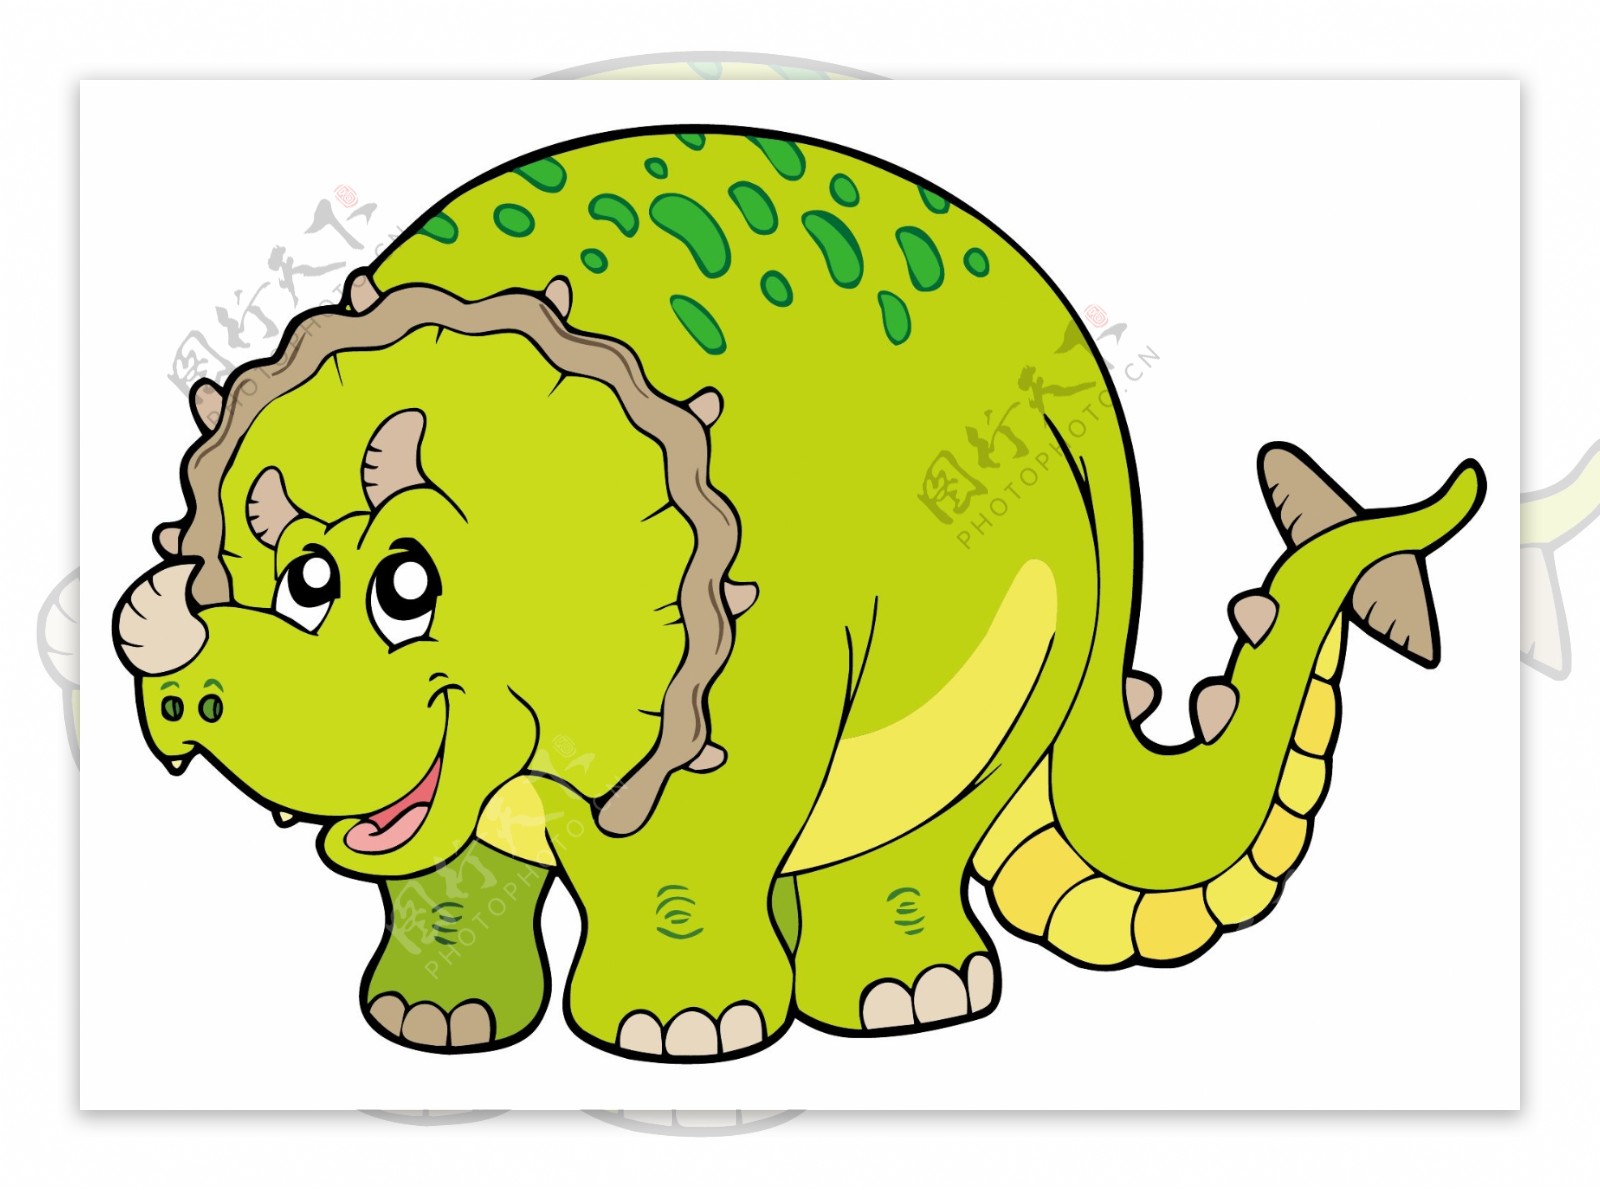 绿色卡通恐龙形象